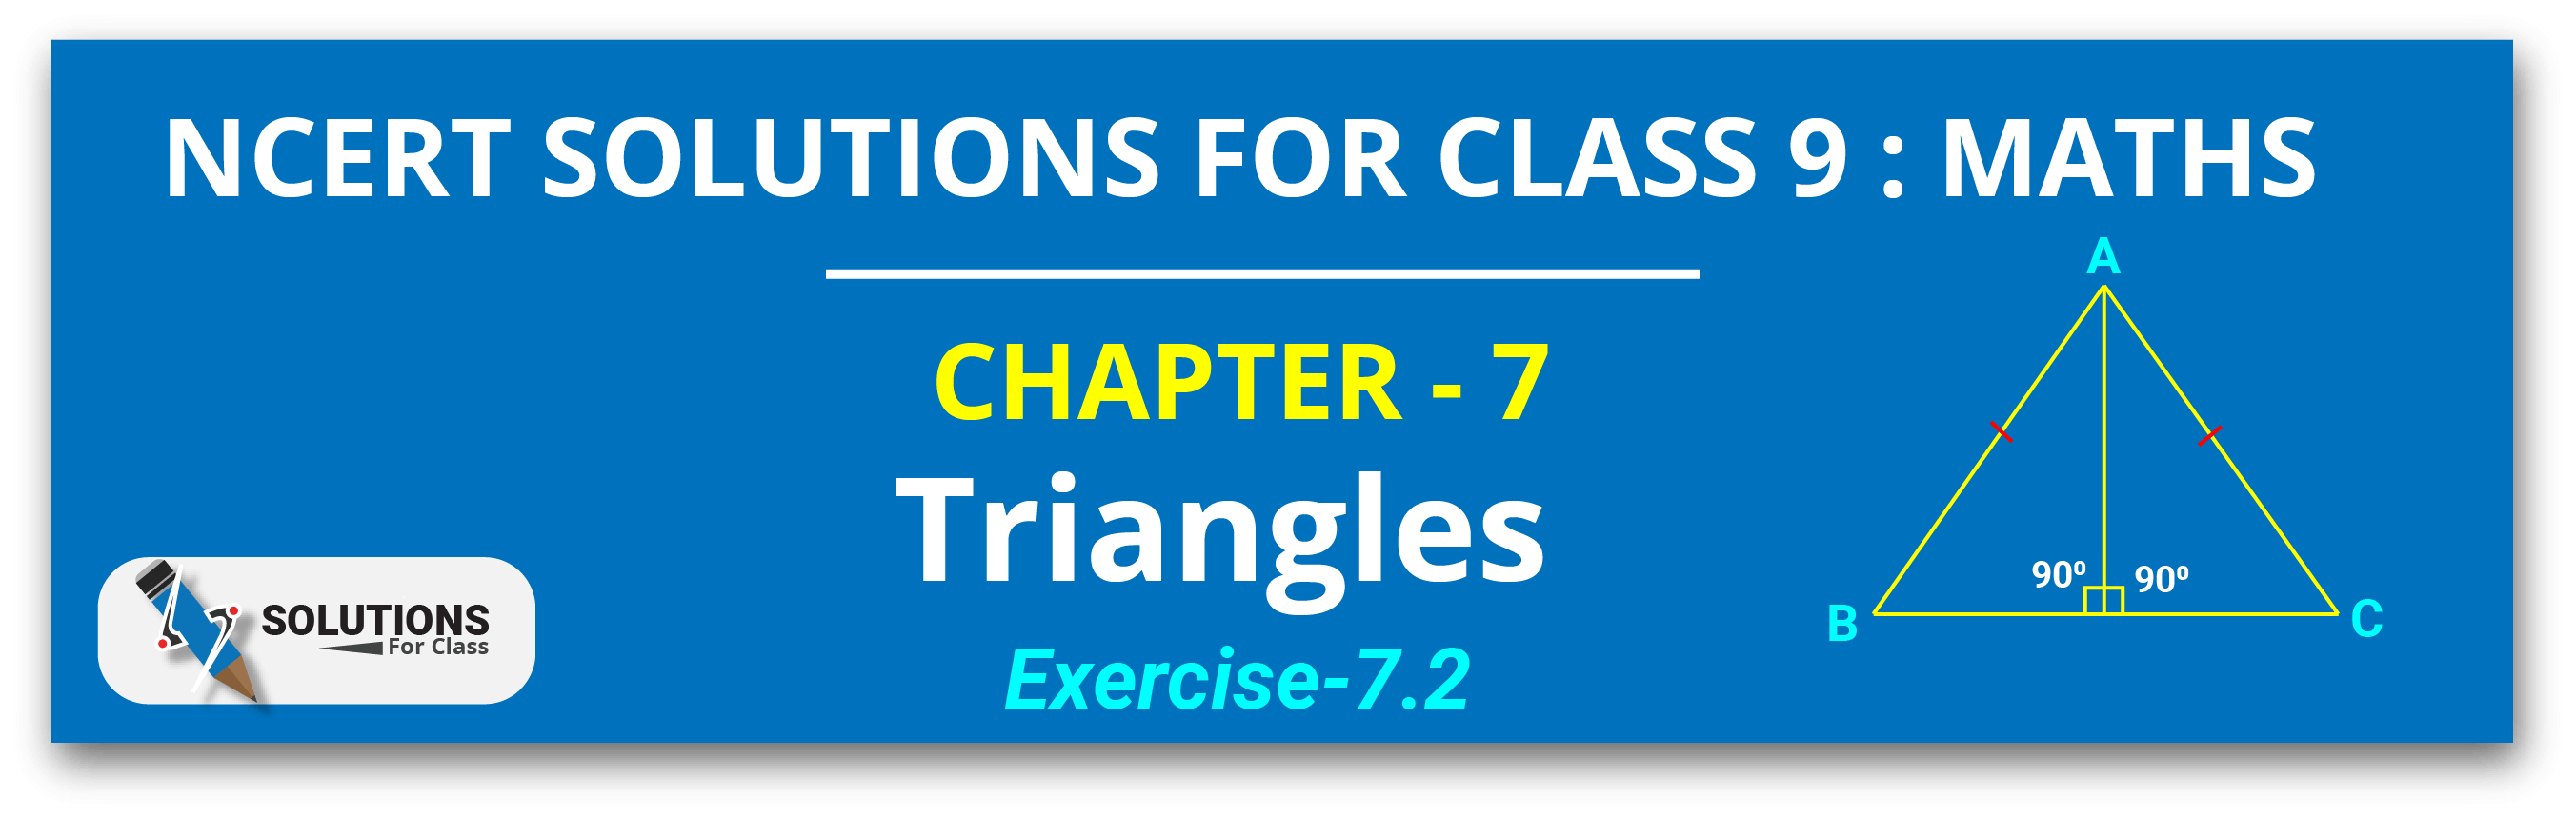 NCERT Solutions For Class 9, Maths, Chapter 7, Exe 7.2